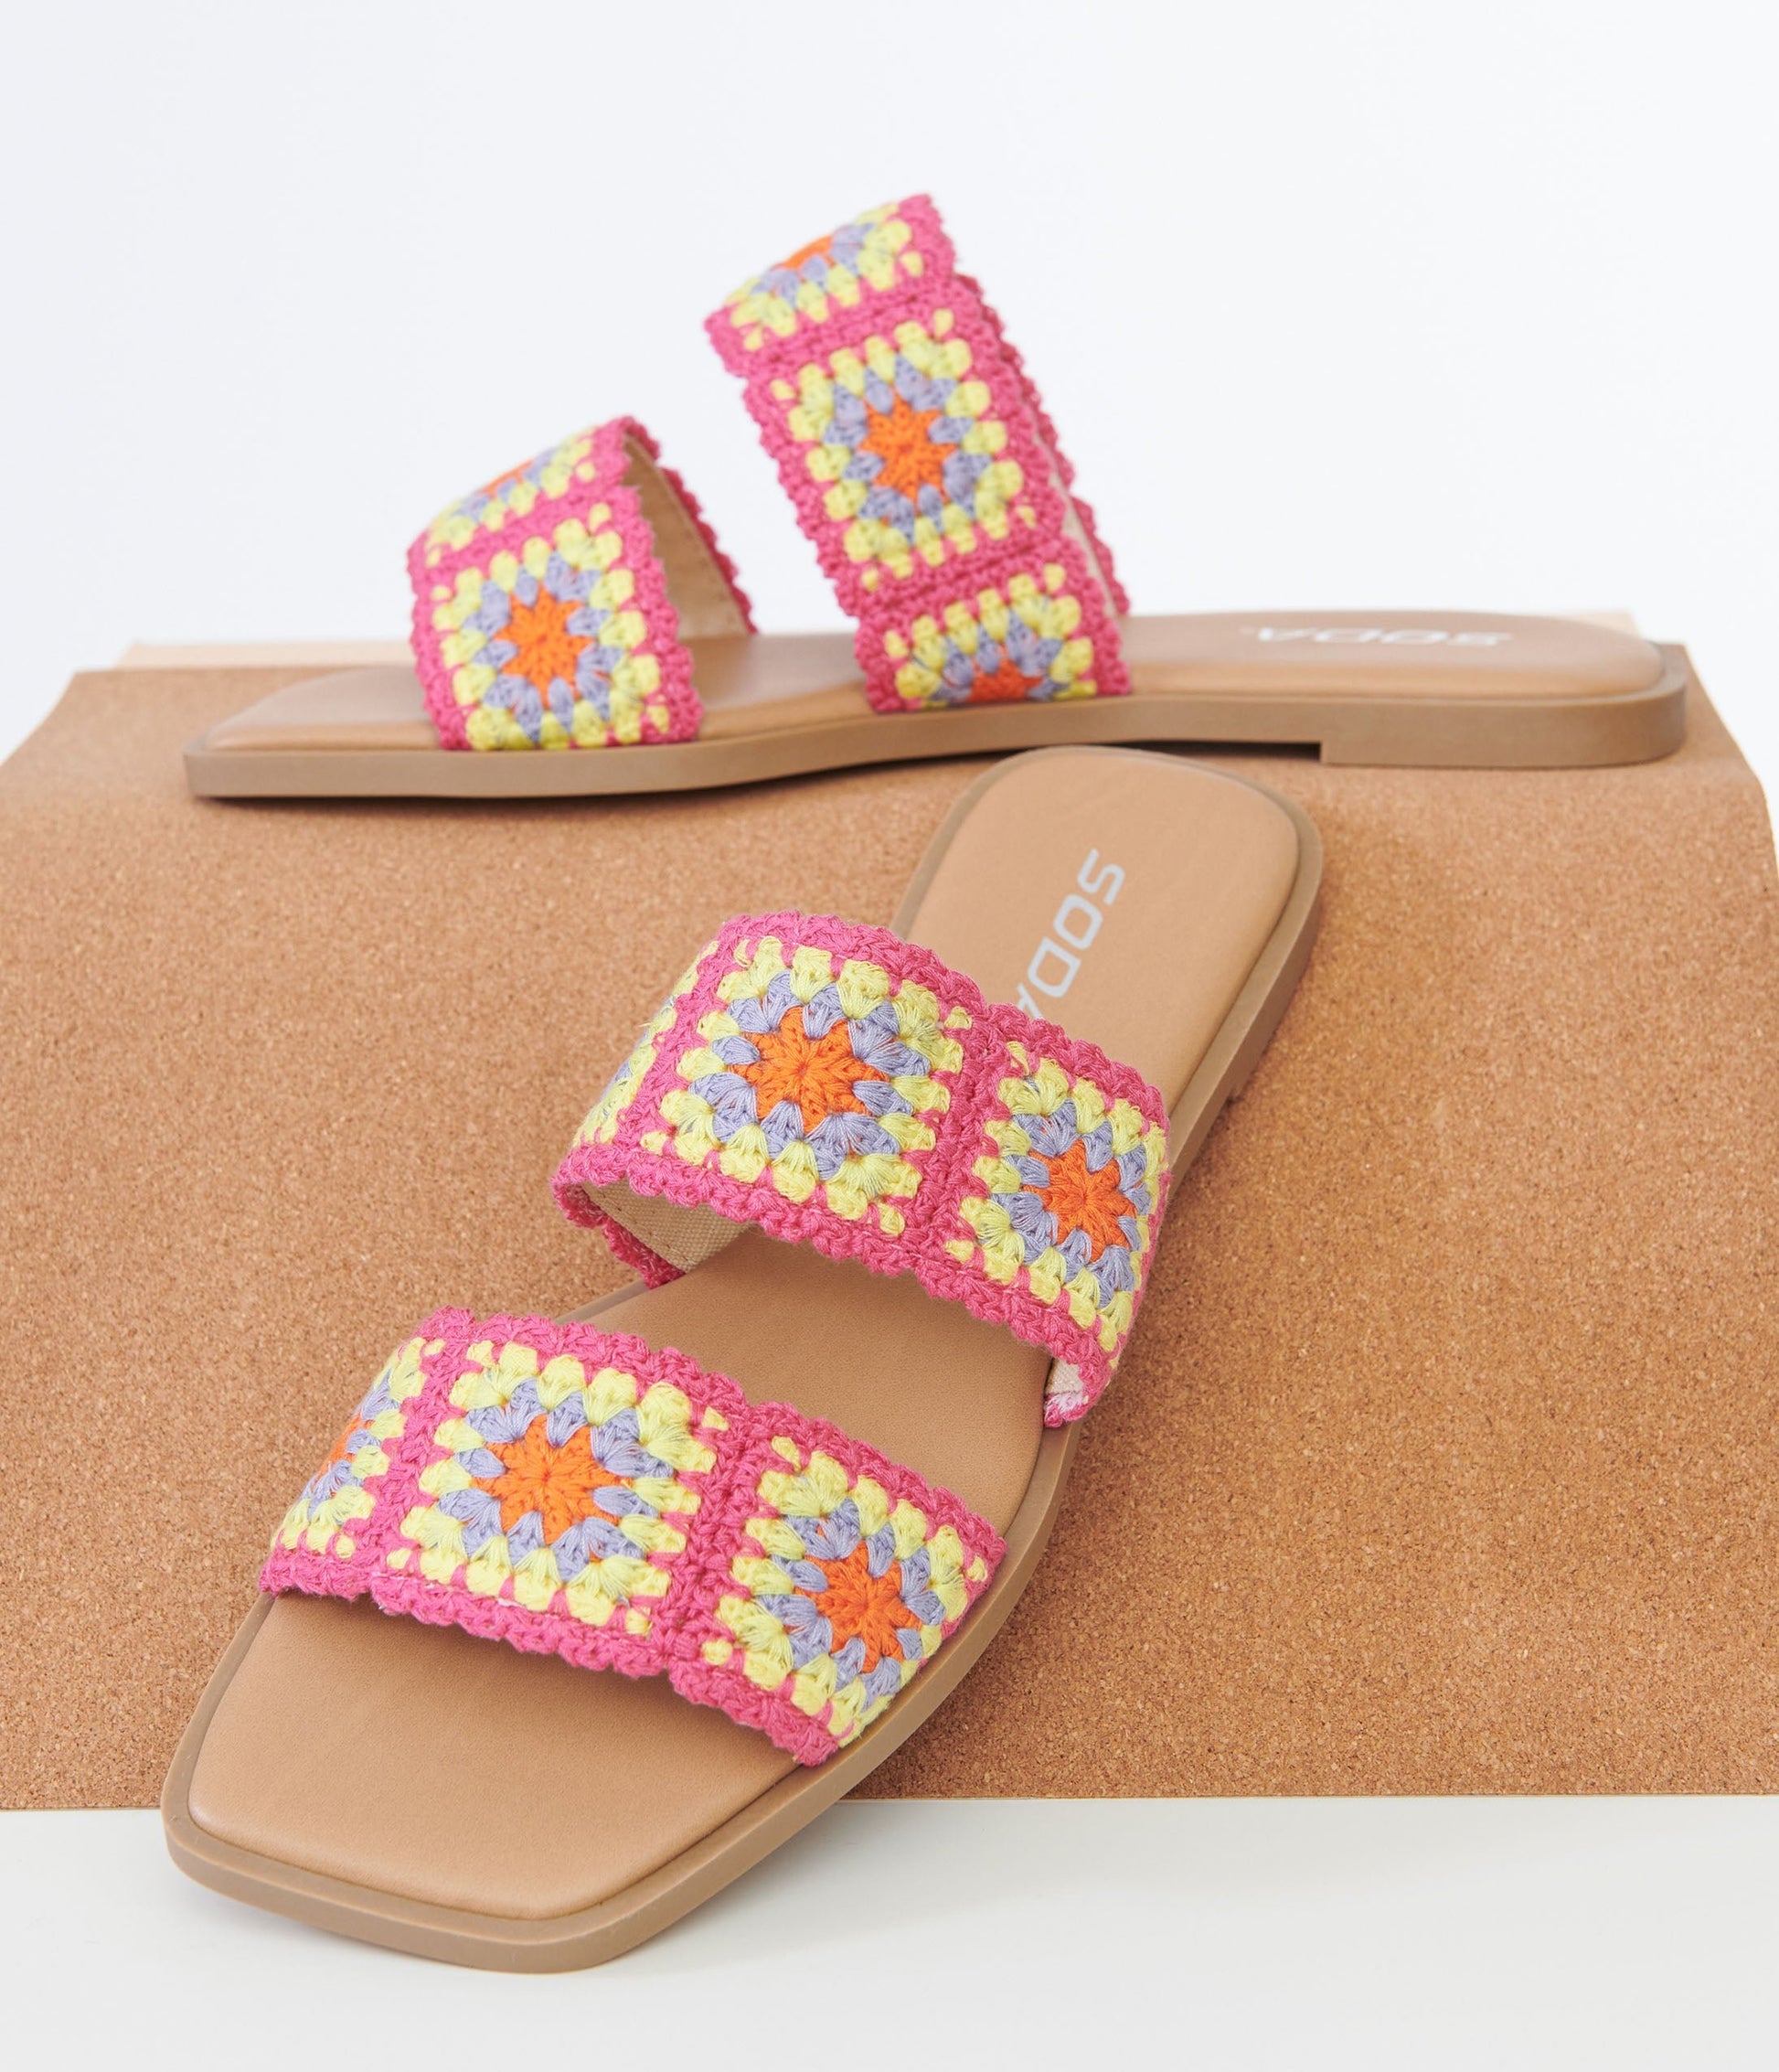 1970s Pink Crochet Square Sandals - Unique Vintage - Womens, SHOES, SANDALS